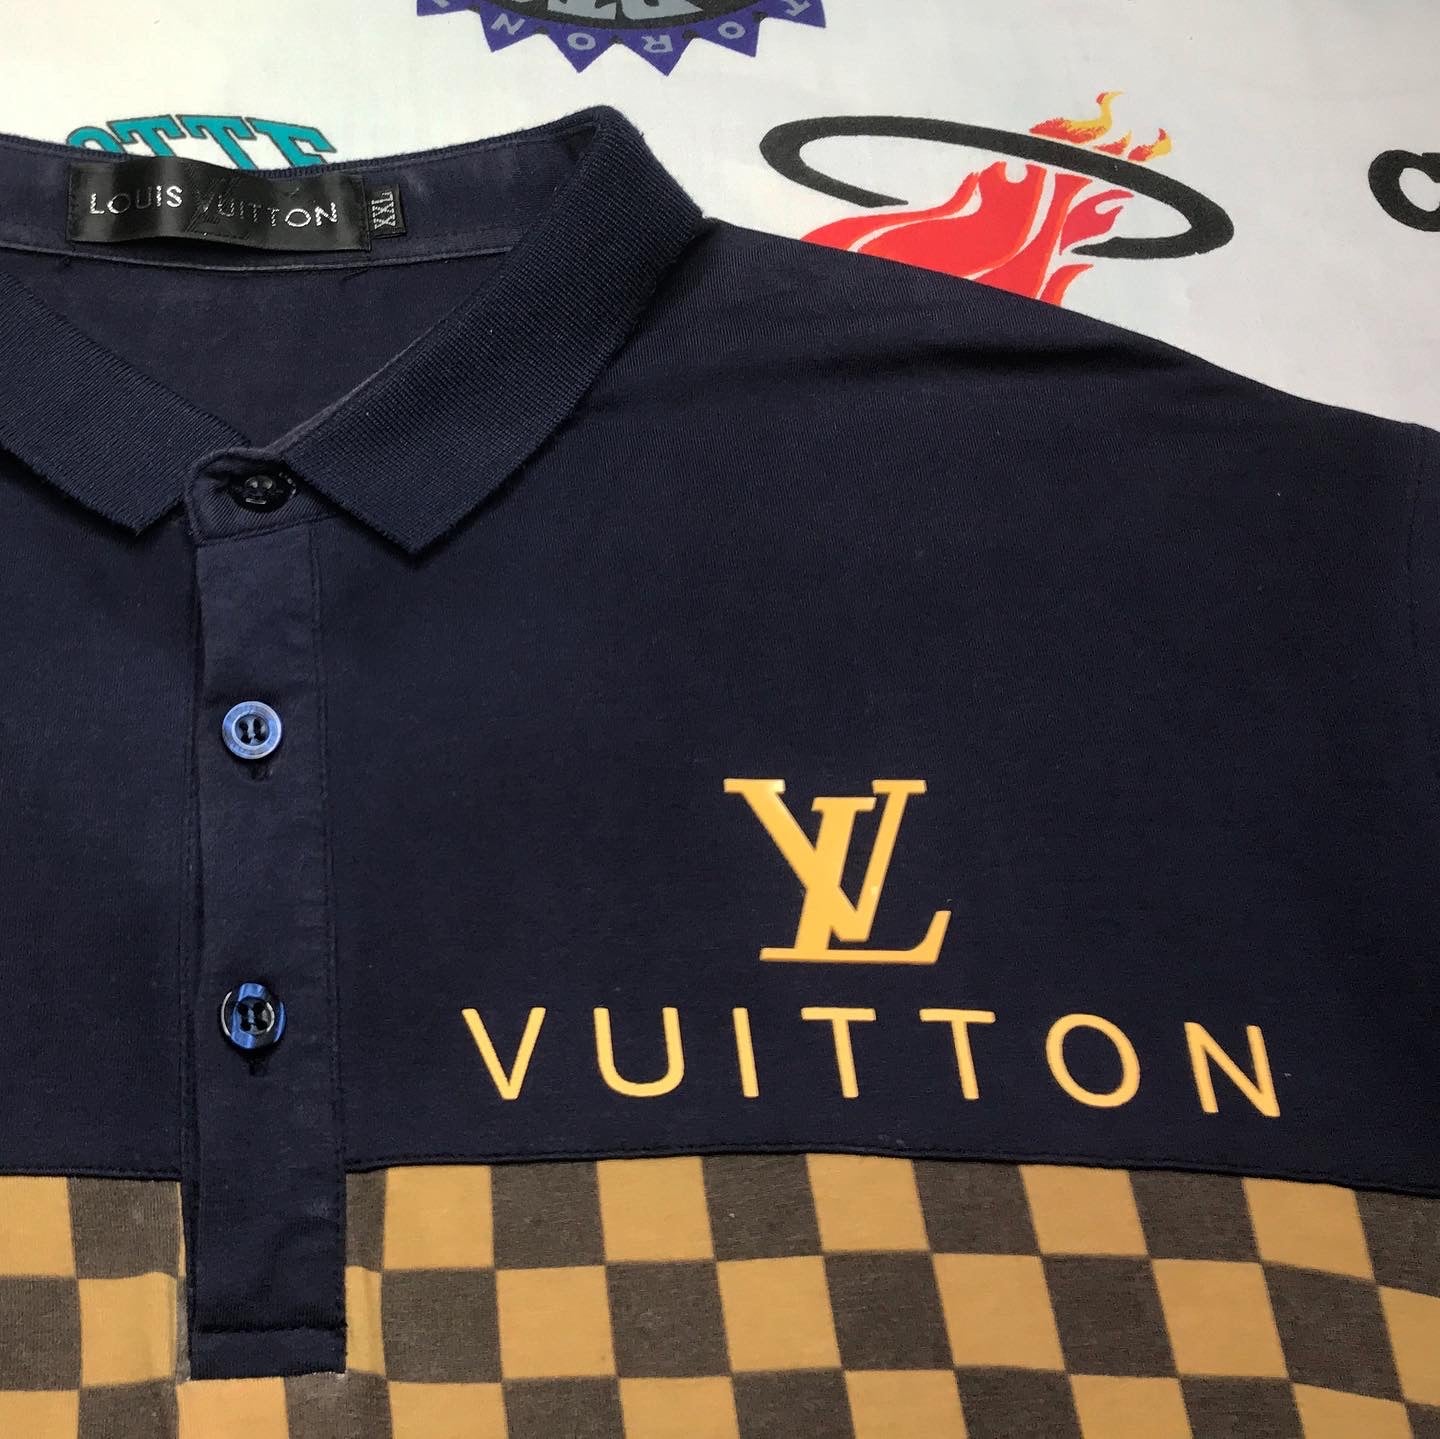 Buy Louis Vuitton Shirt, Louis Vuitton T Shirt, Louis Vuitton for Men Shirts,  Louis Vuitton Replicias Shirts, Louis Vuitton T-Shirt Online at  desertcartINDIA